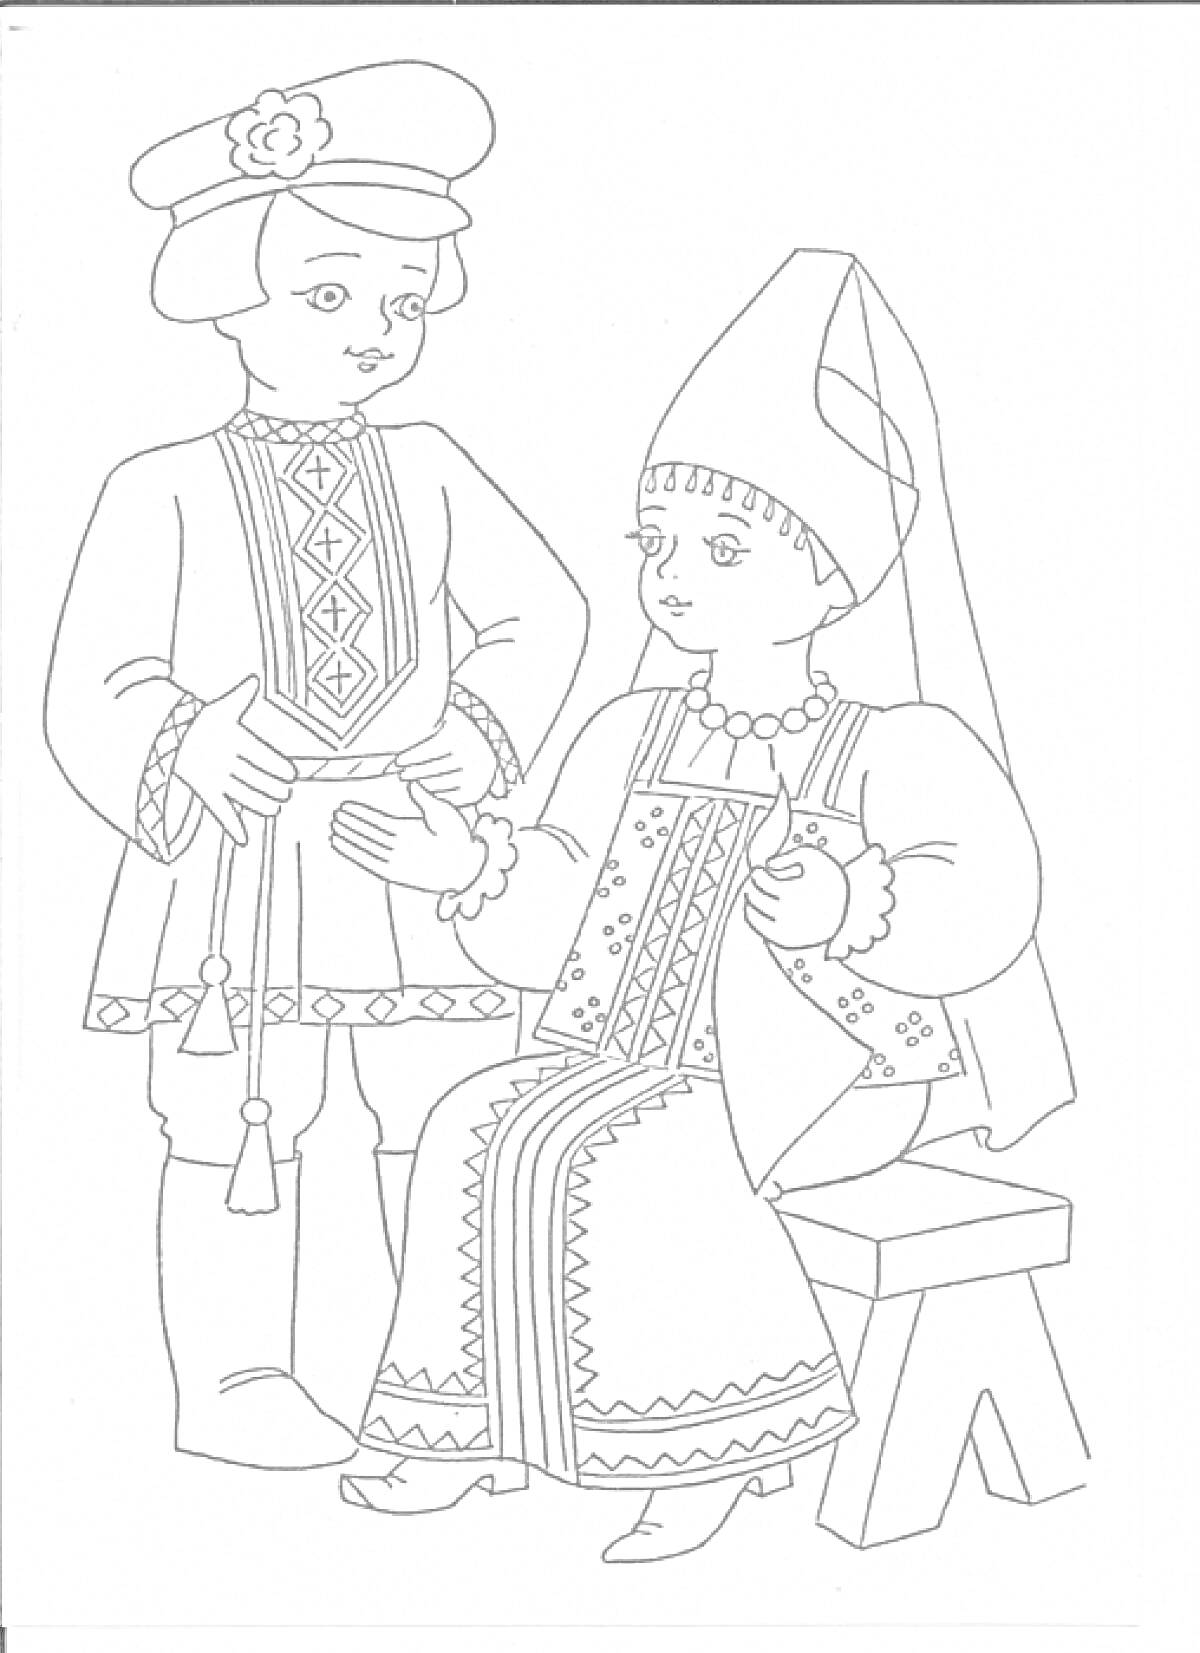 Раскраска Русский народный костюм с девушкой в кокошнике и мужчину в рубахе с поясом